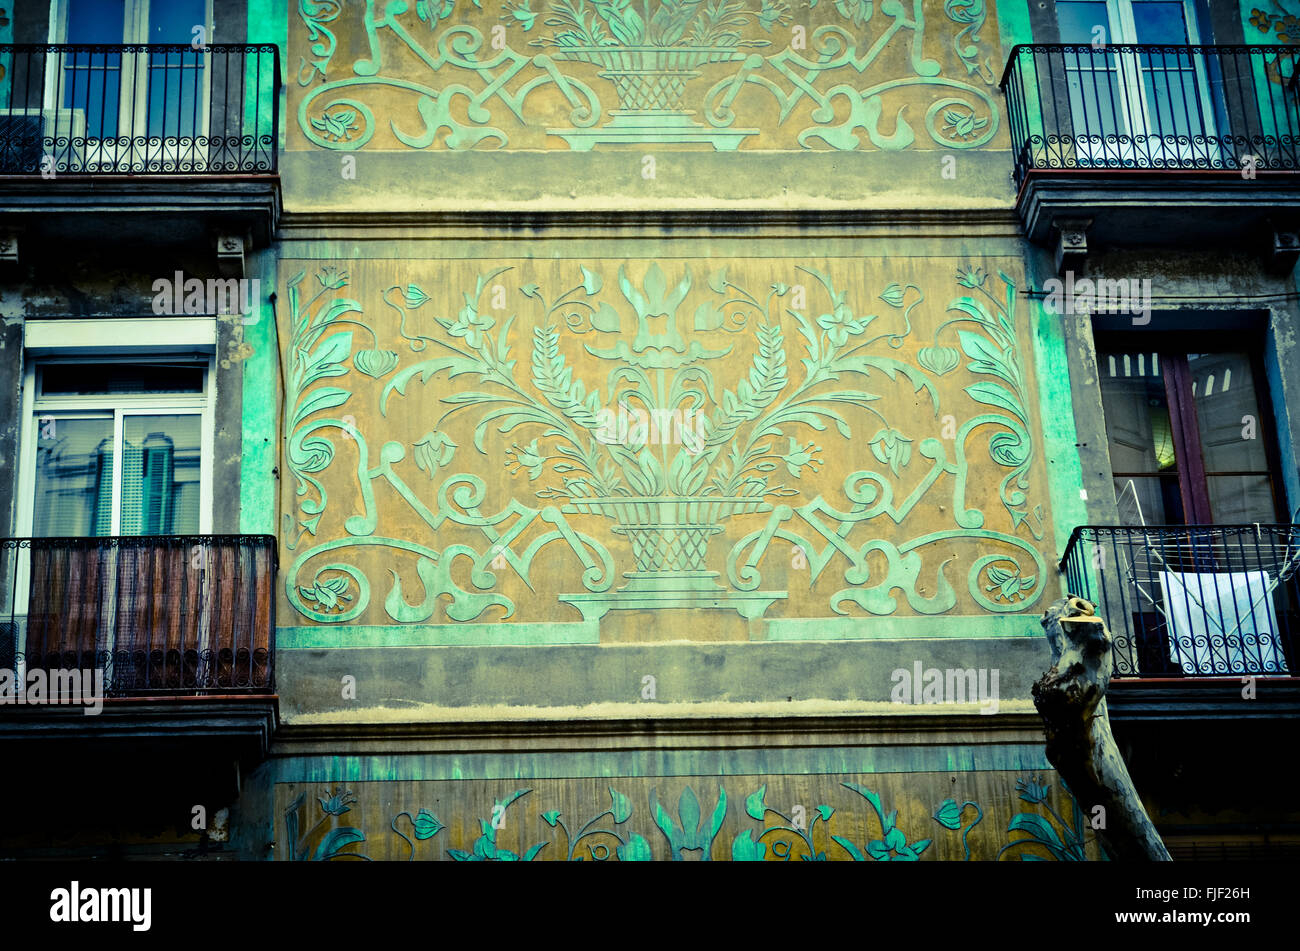 Sgraffito on a facade of a building.. Eixample quarter, Barcelona, Catalonia, Spain. Stock Photo